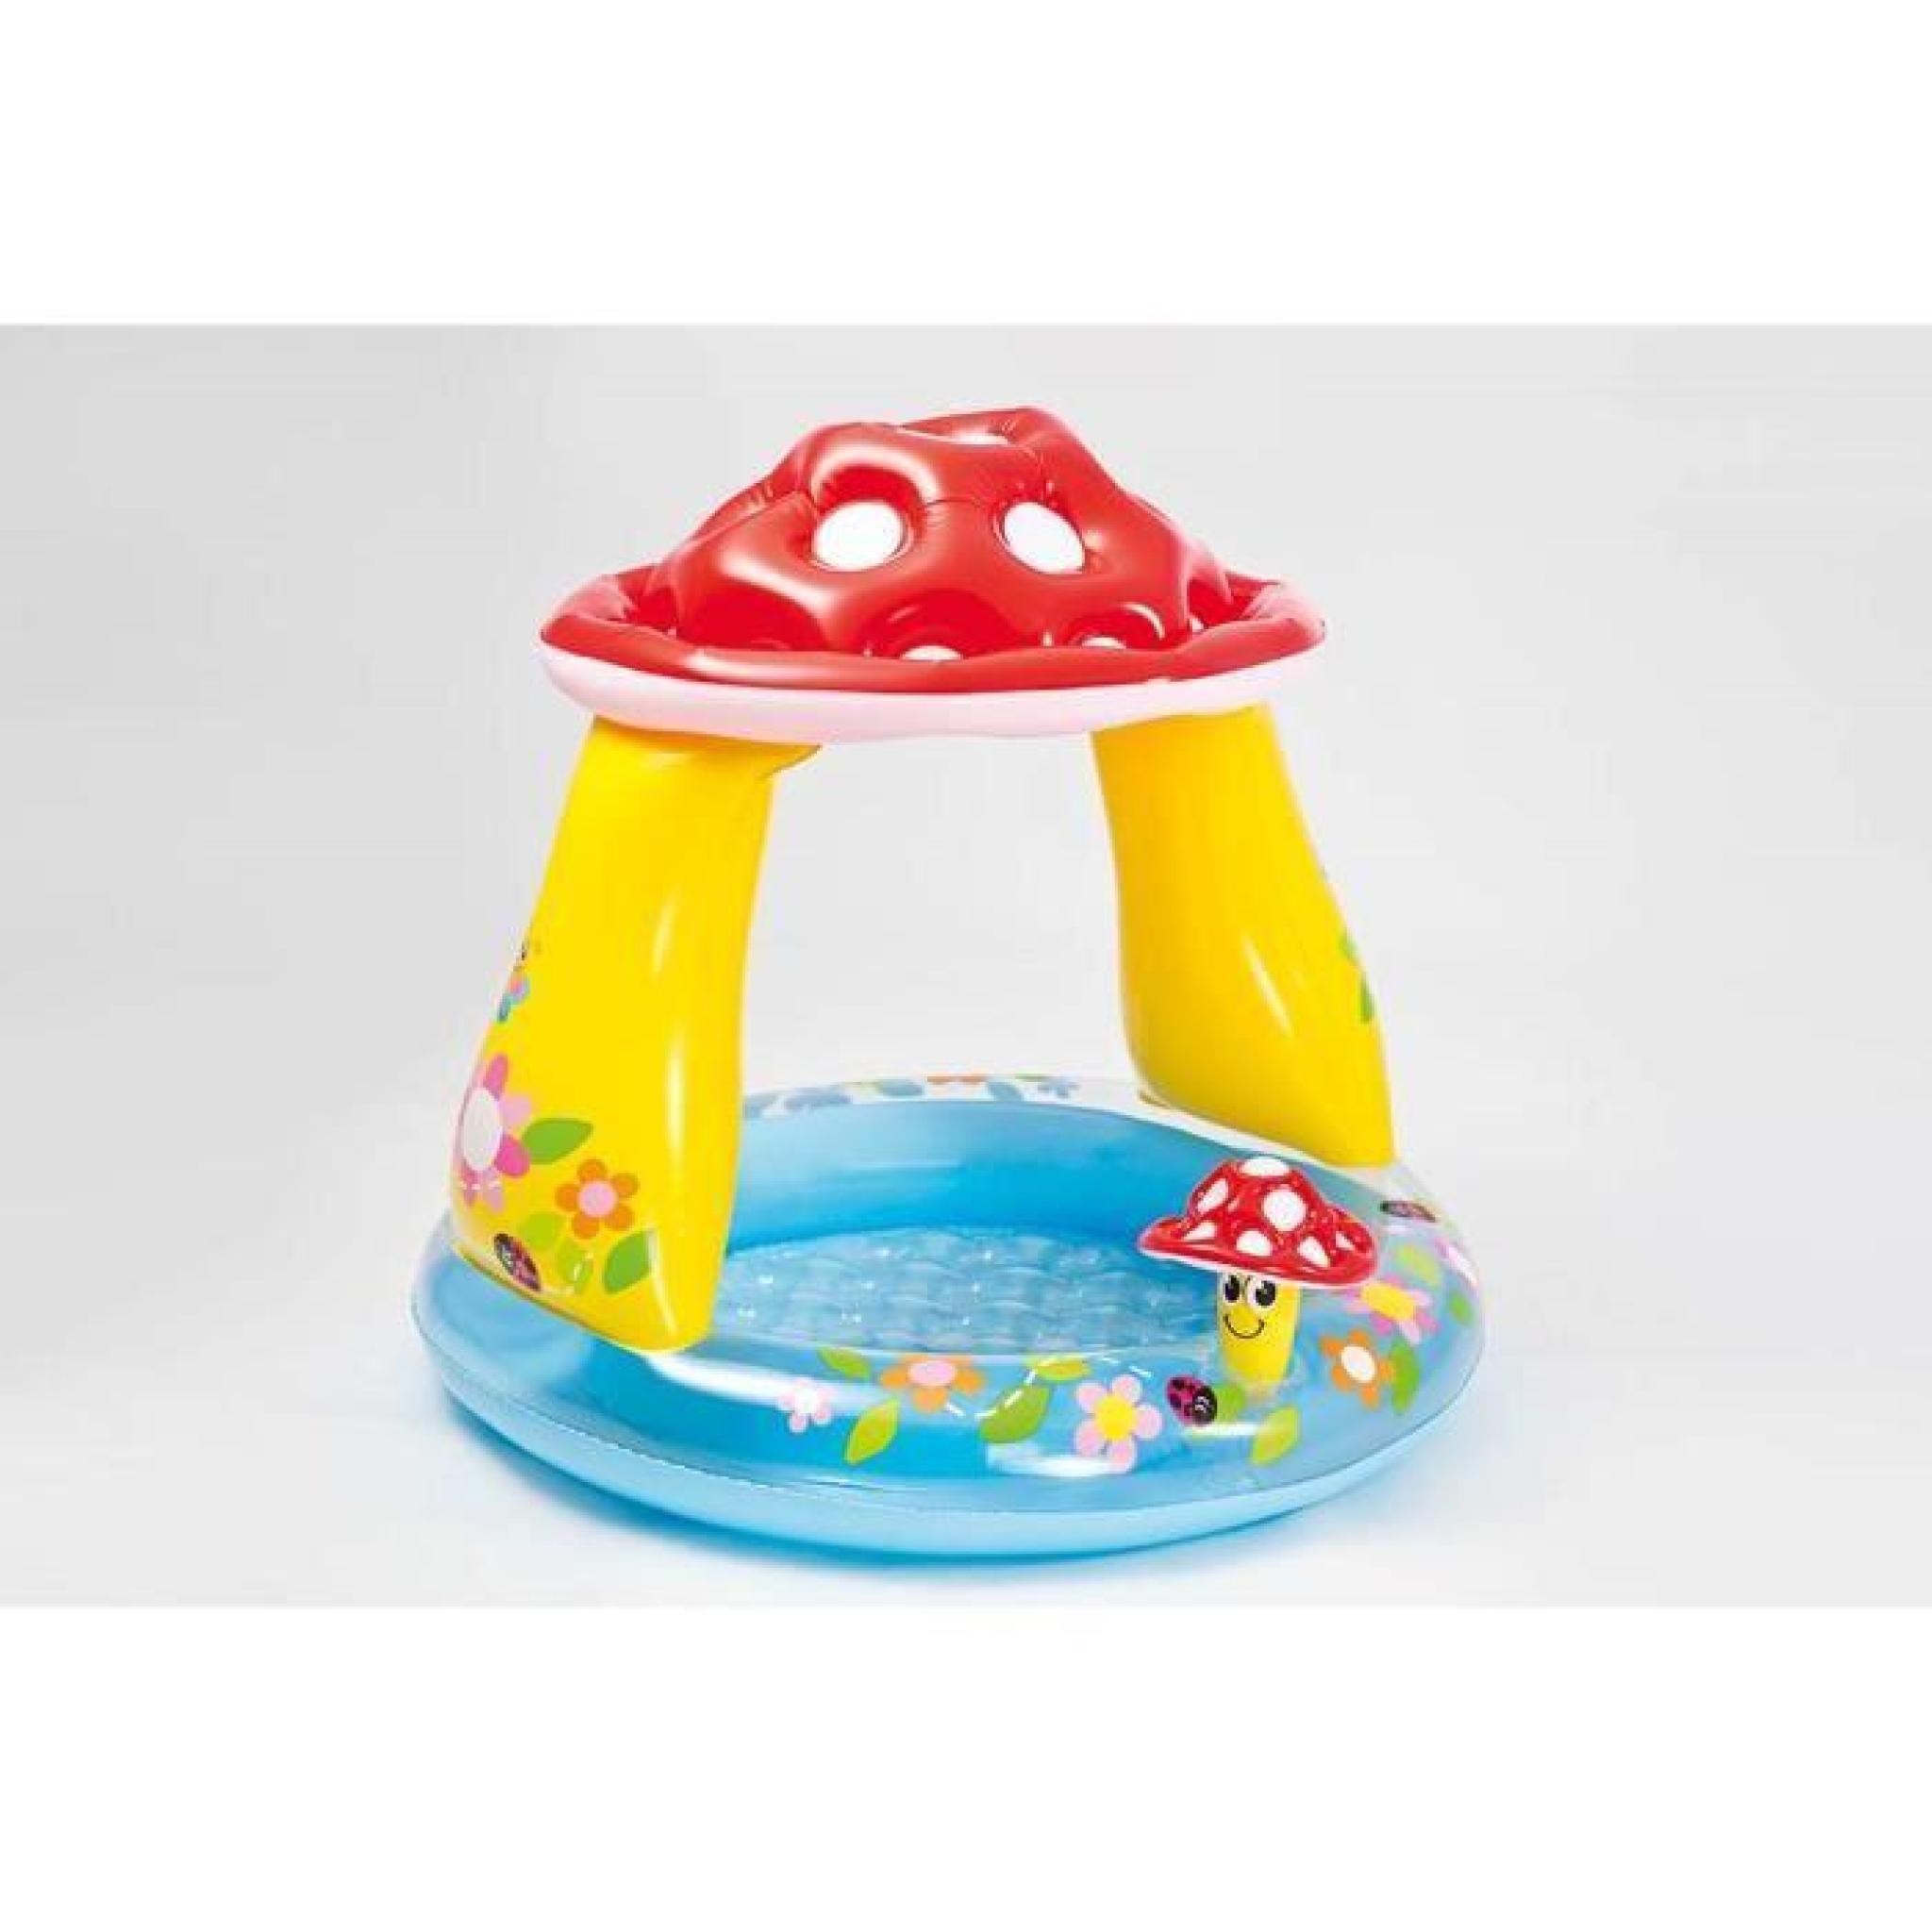 Intex 57114 Mushroom Baby Pool piscine gonflable pour enfants aire de jeux